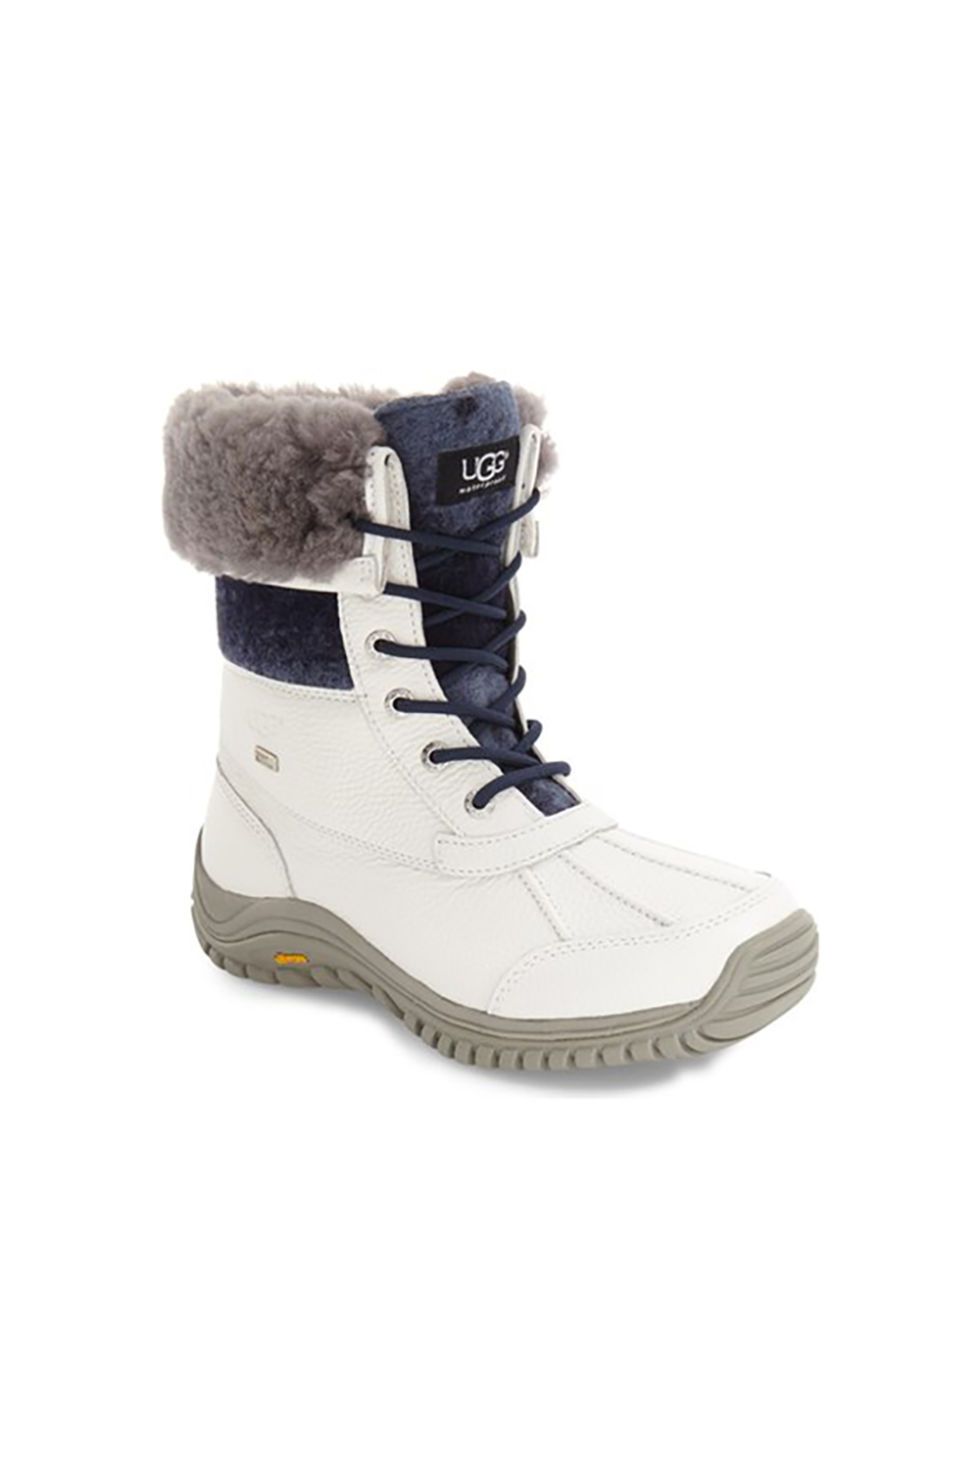 Footwear, Product, Shoe, White, Boot, Black, Grey, Beige, Ice skate, Walking shoe, 